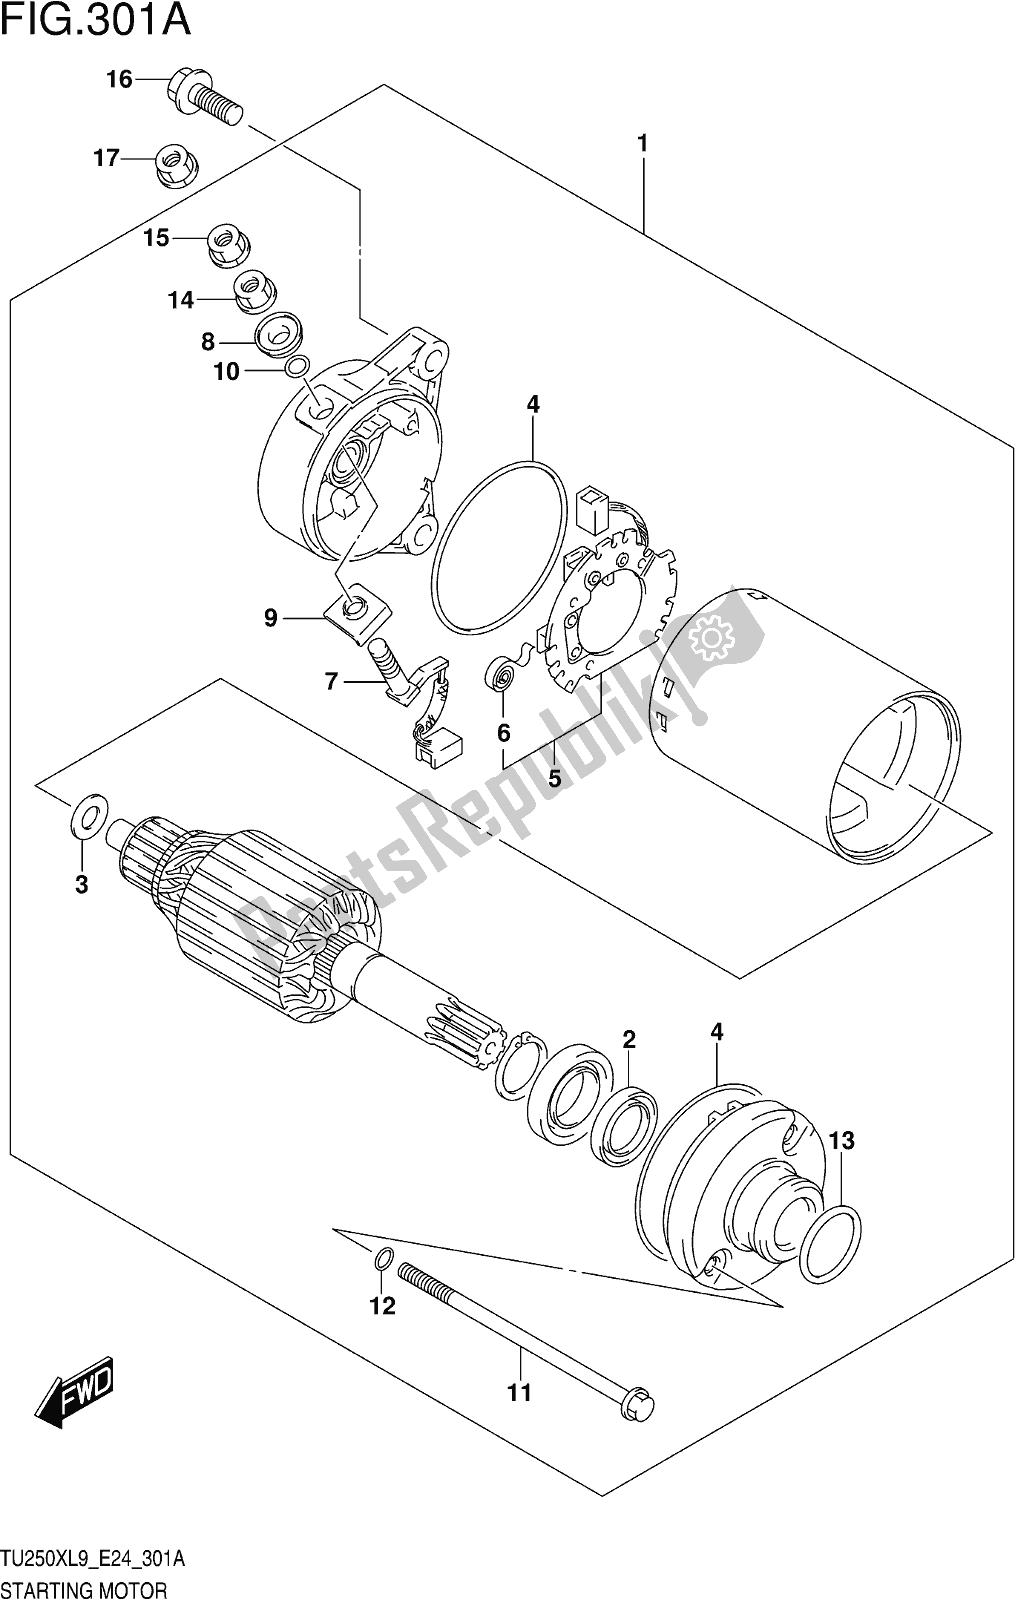 Alle onderdelen voor de Fig. 301a Starting Motor van de Suzuki TU 250X 2019